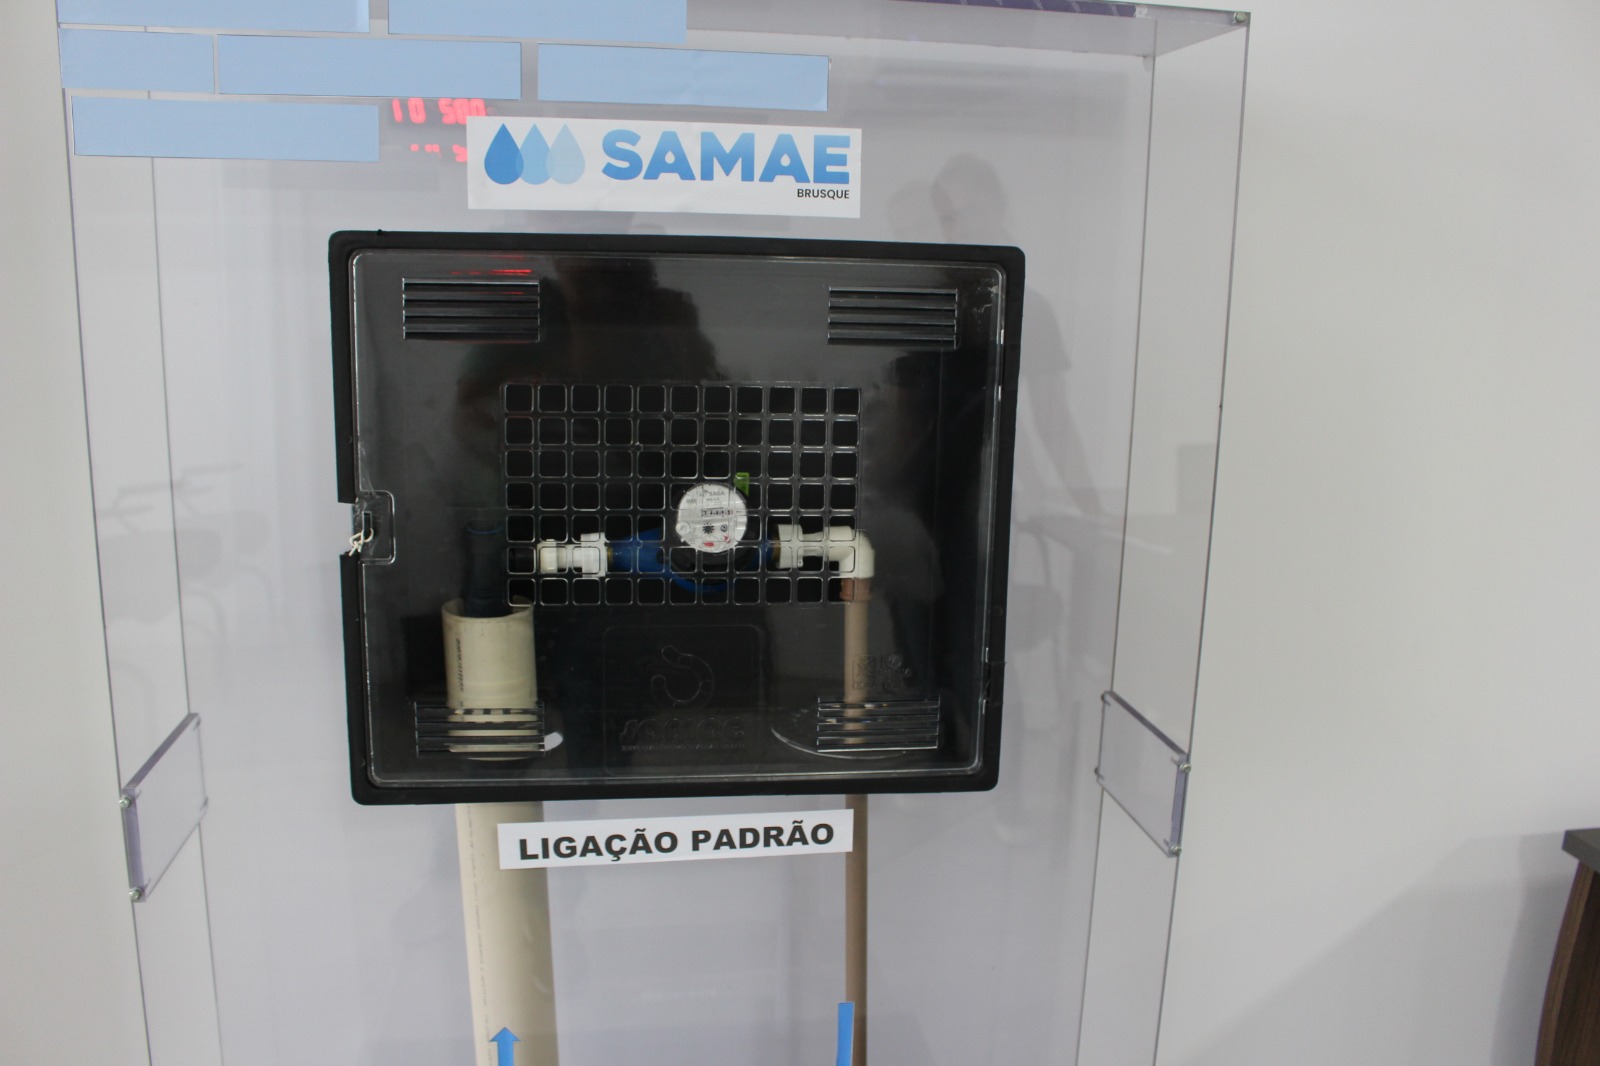 Samae lança padronização de caixas para novos pedidos de ligação de água